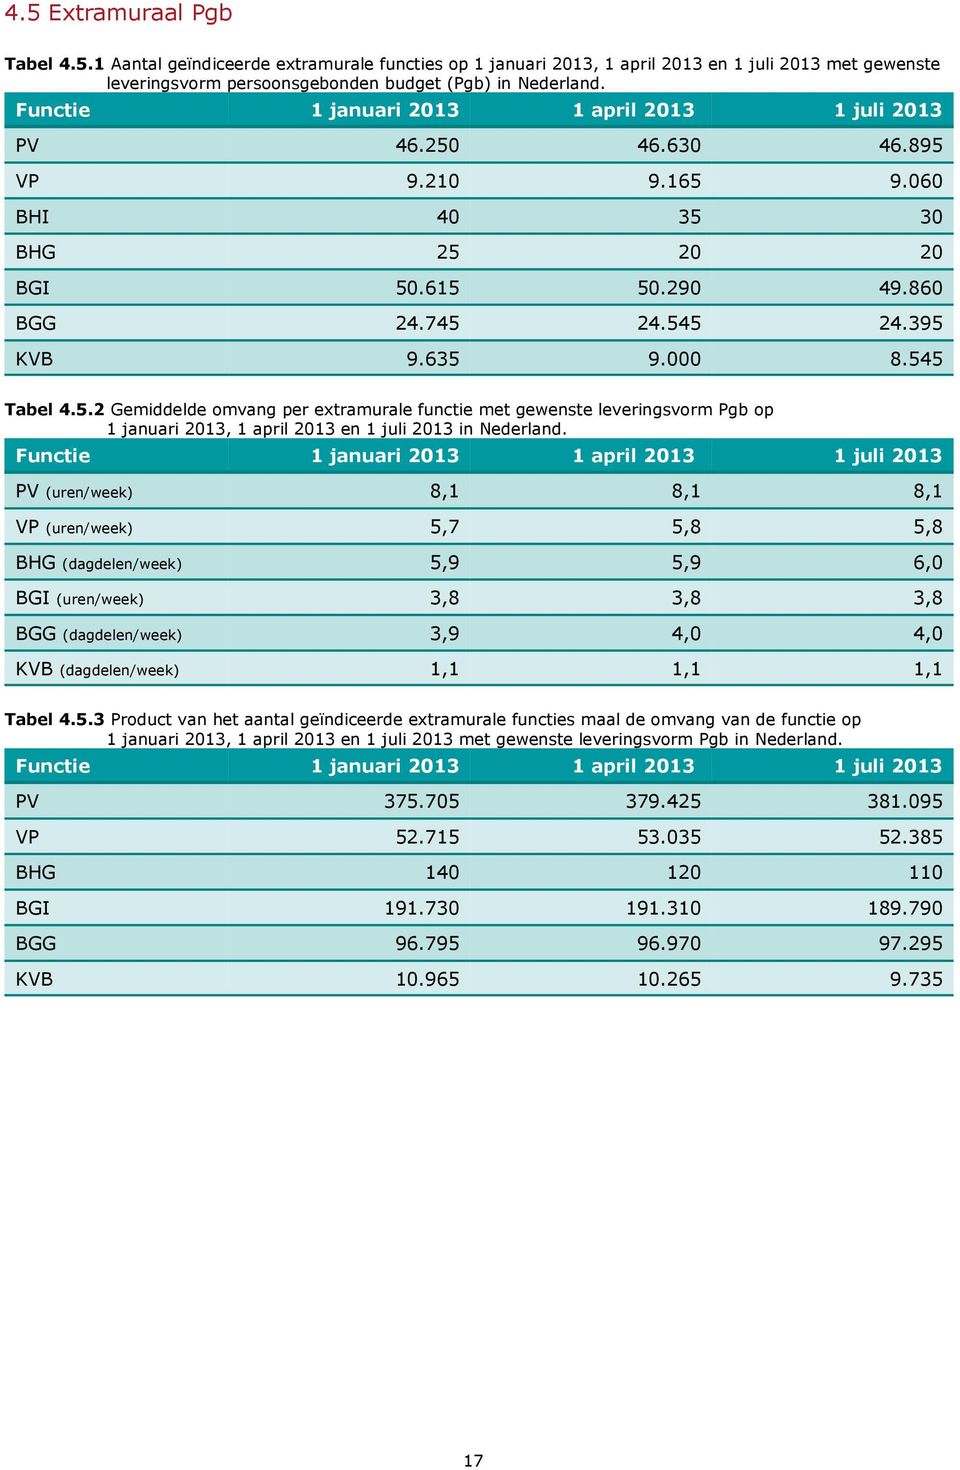 5.2 Gemiddelde omvang per extramurale functie met gewenste leveringsvorm Pgb op 1 januari 2013, 1 april 2013 en 1 juli 2013 in Nederland.